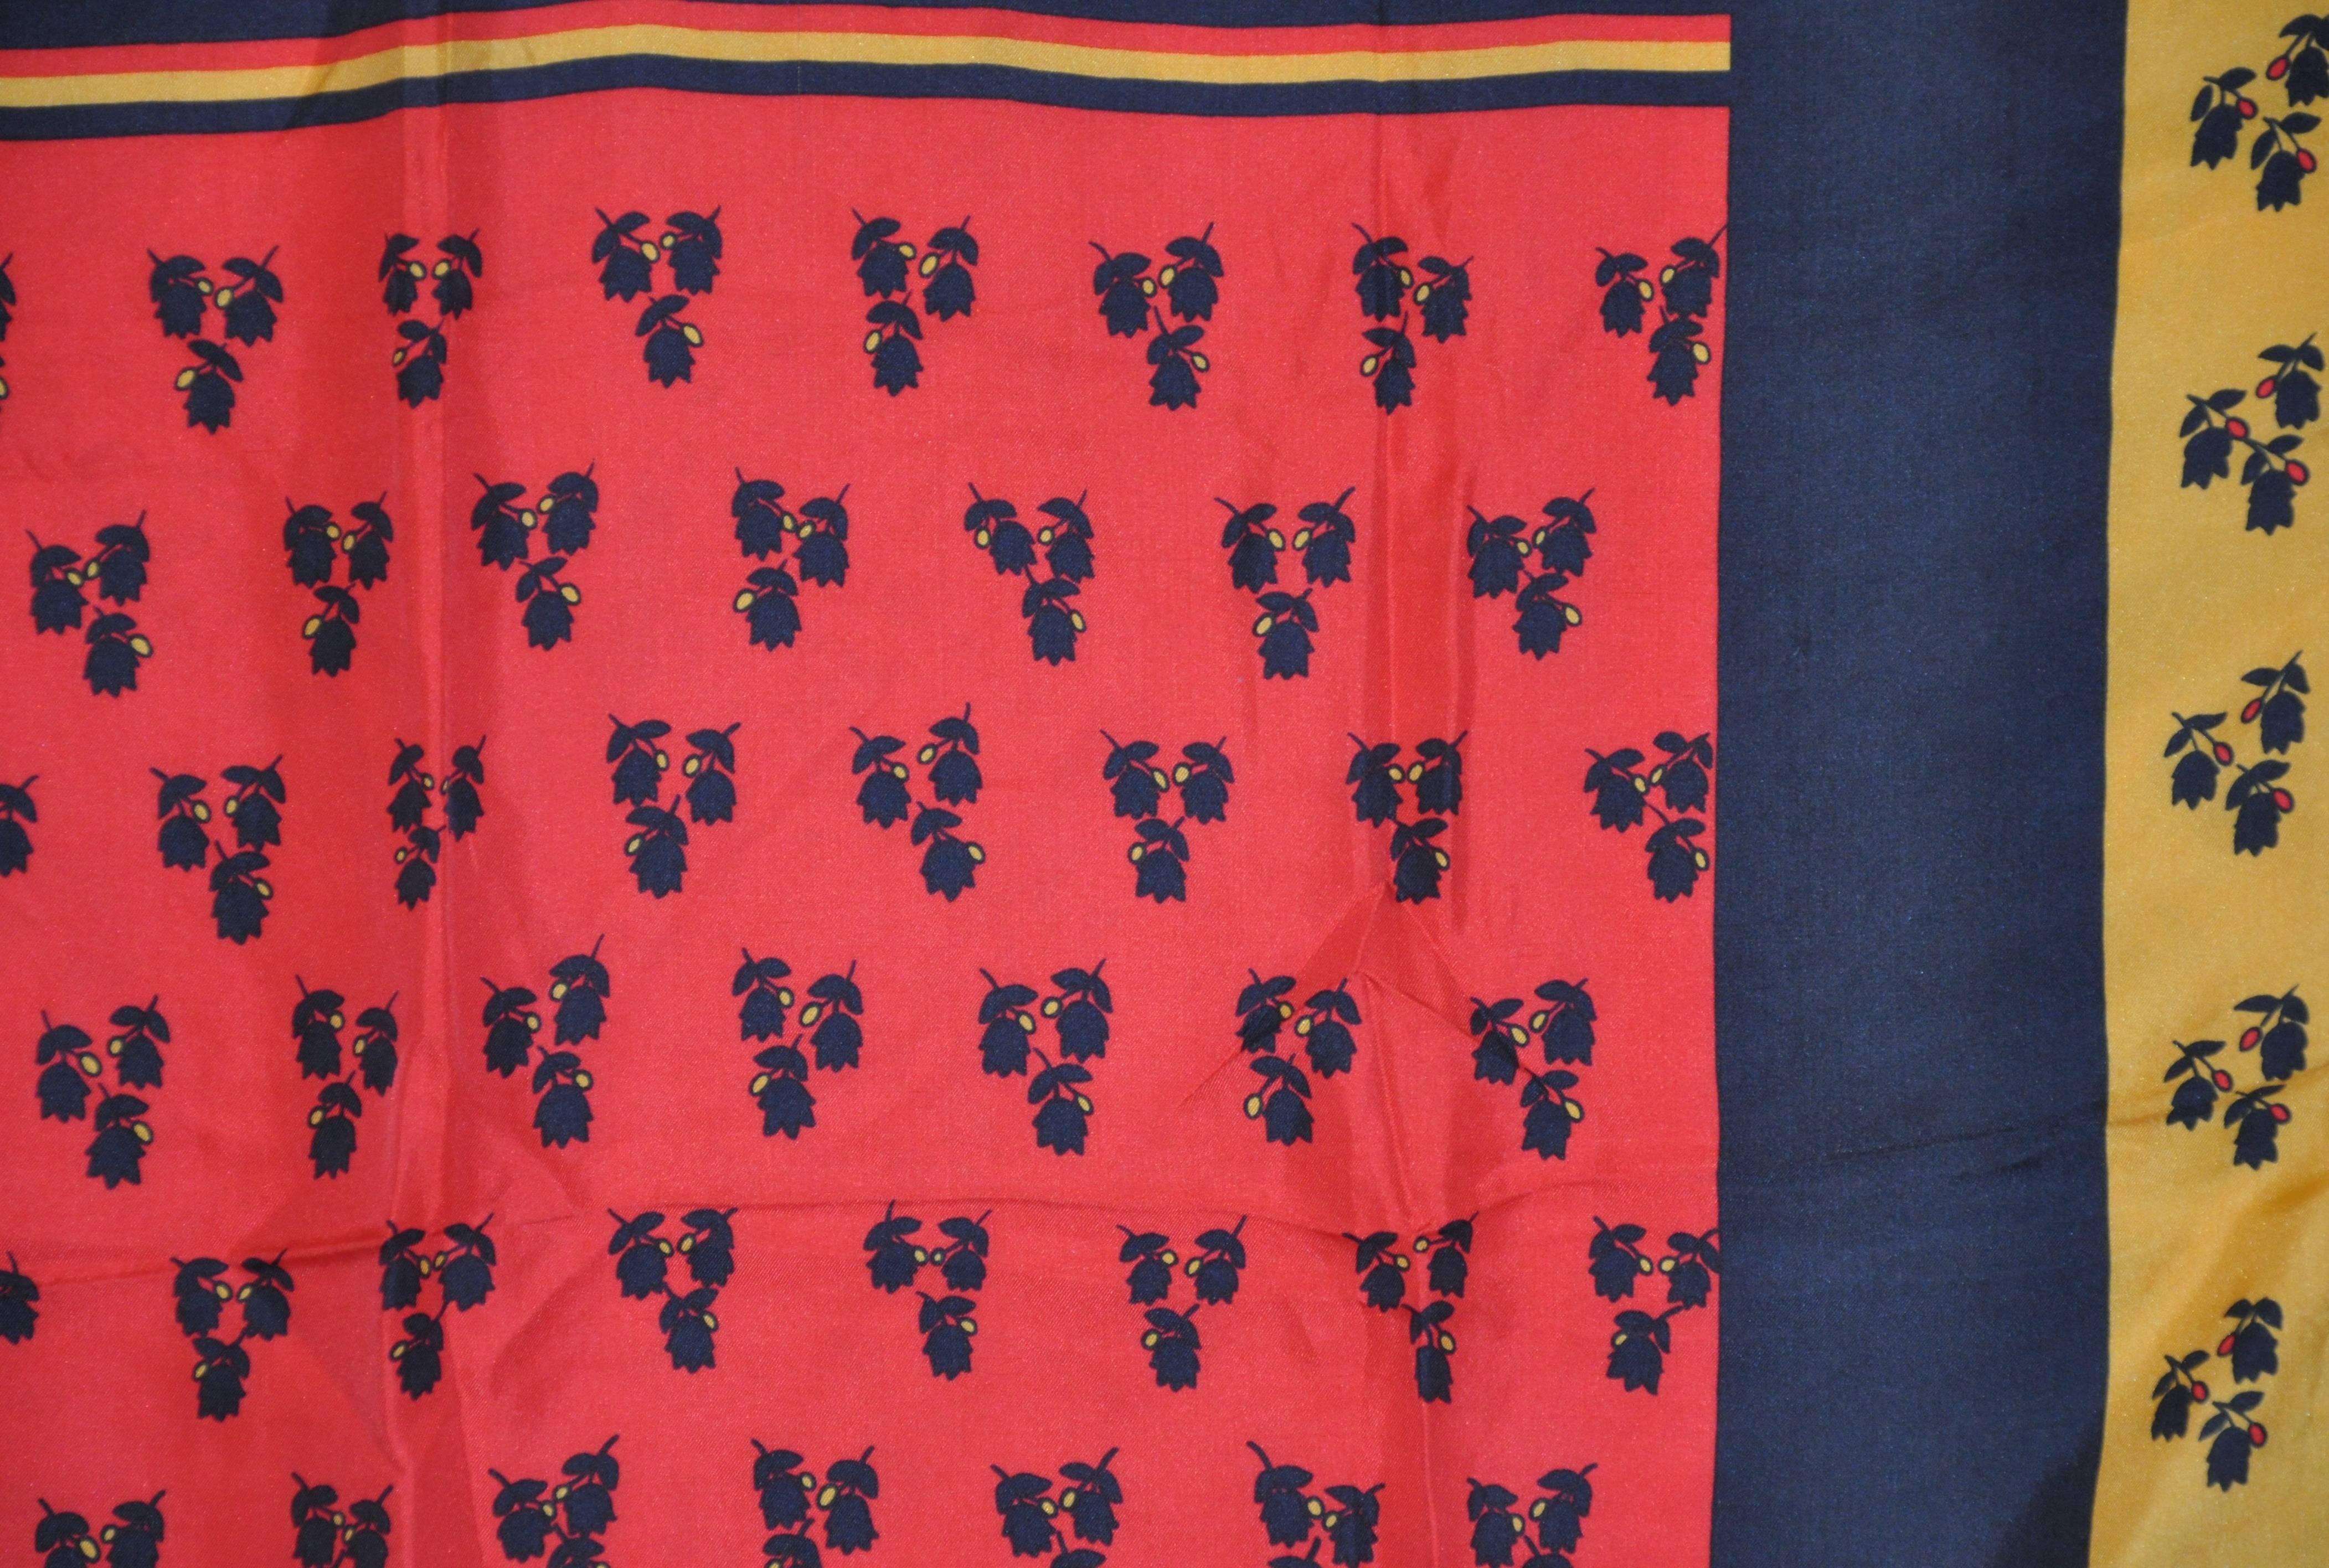     Le merveilleux foulard en soie floral multicolore de Burmel mesure 30